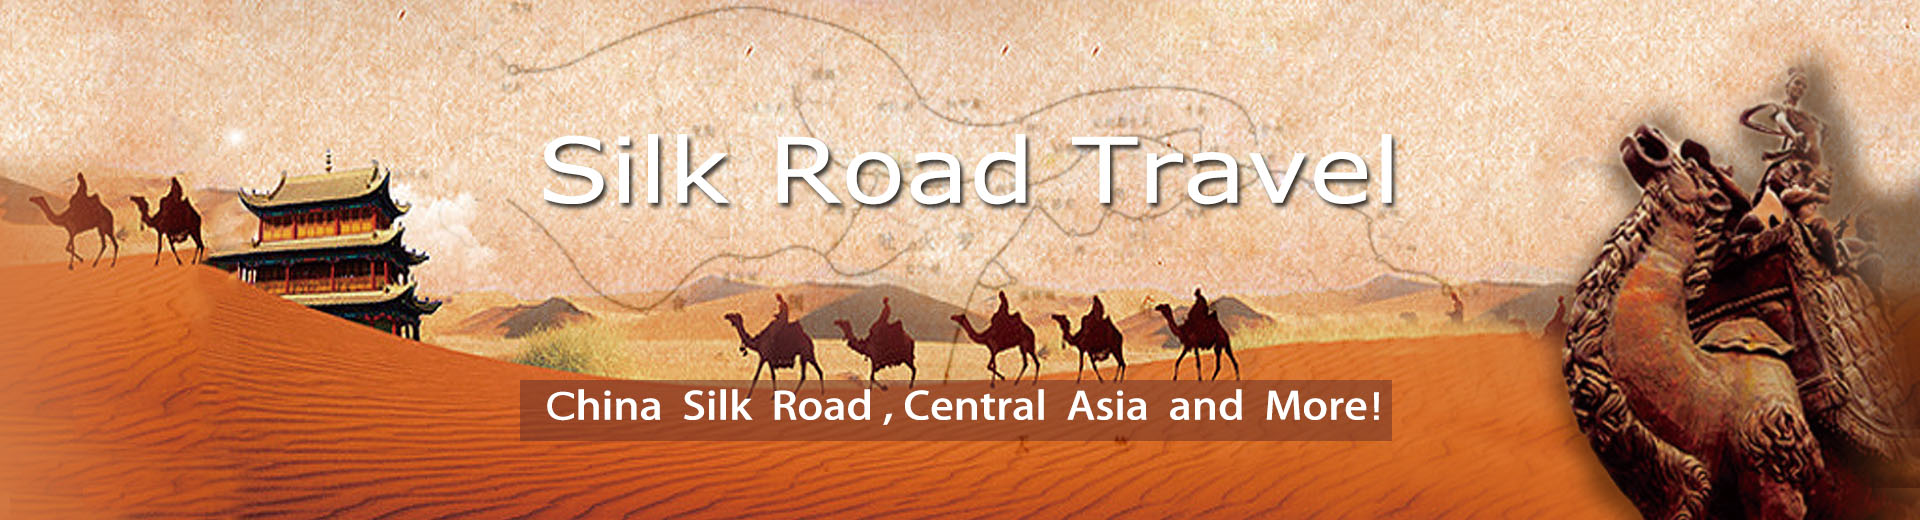 silk road travel llc